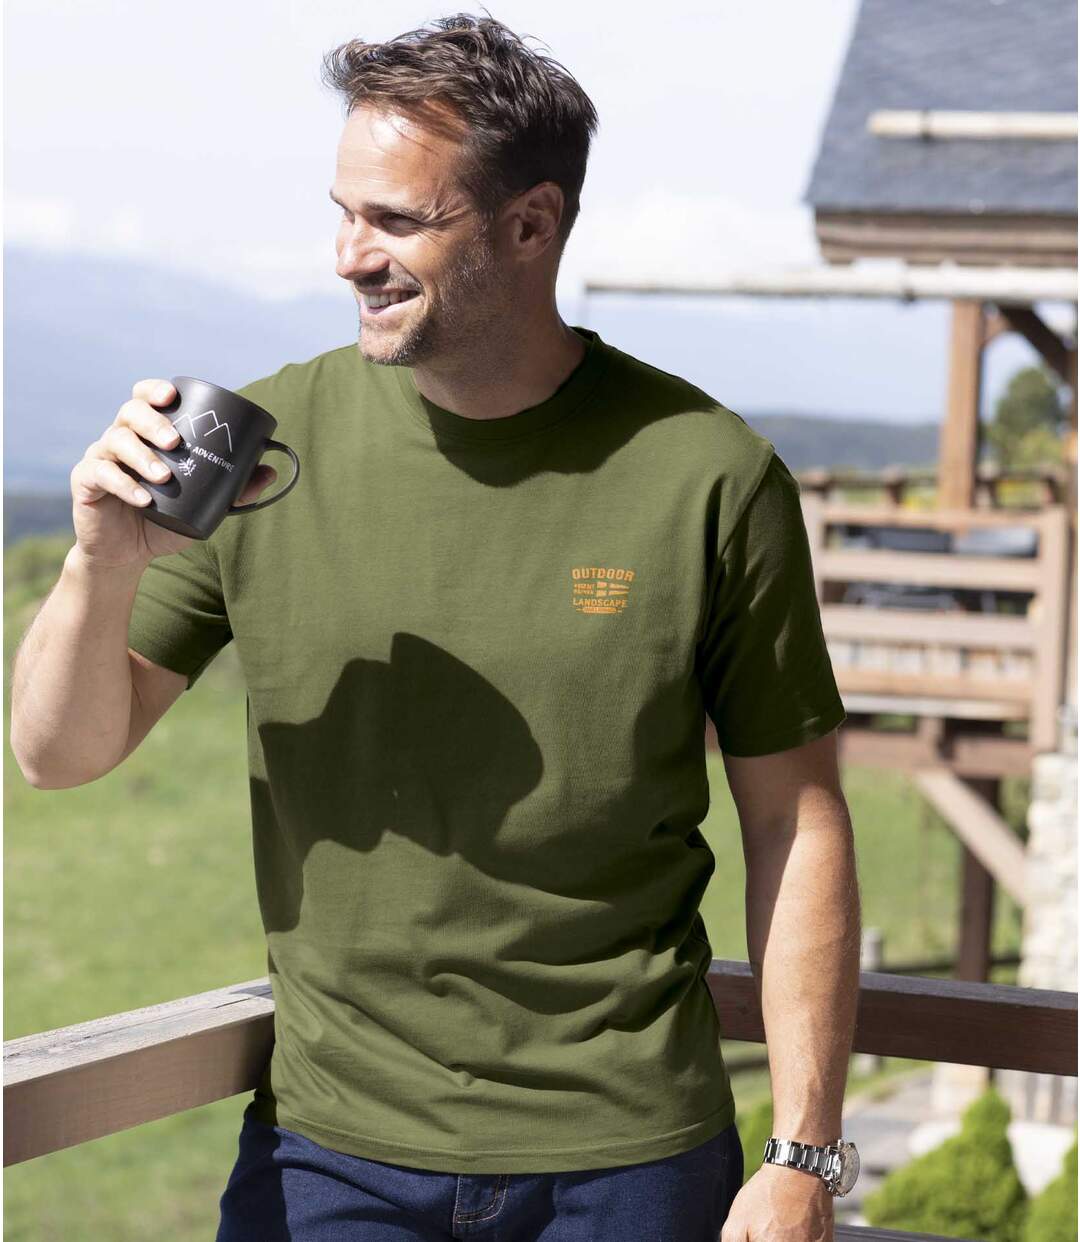 Sada 4 outdoorových triček Atlas For Men